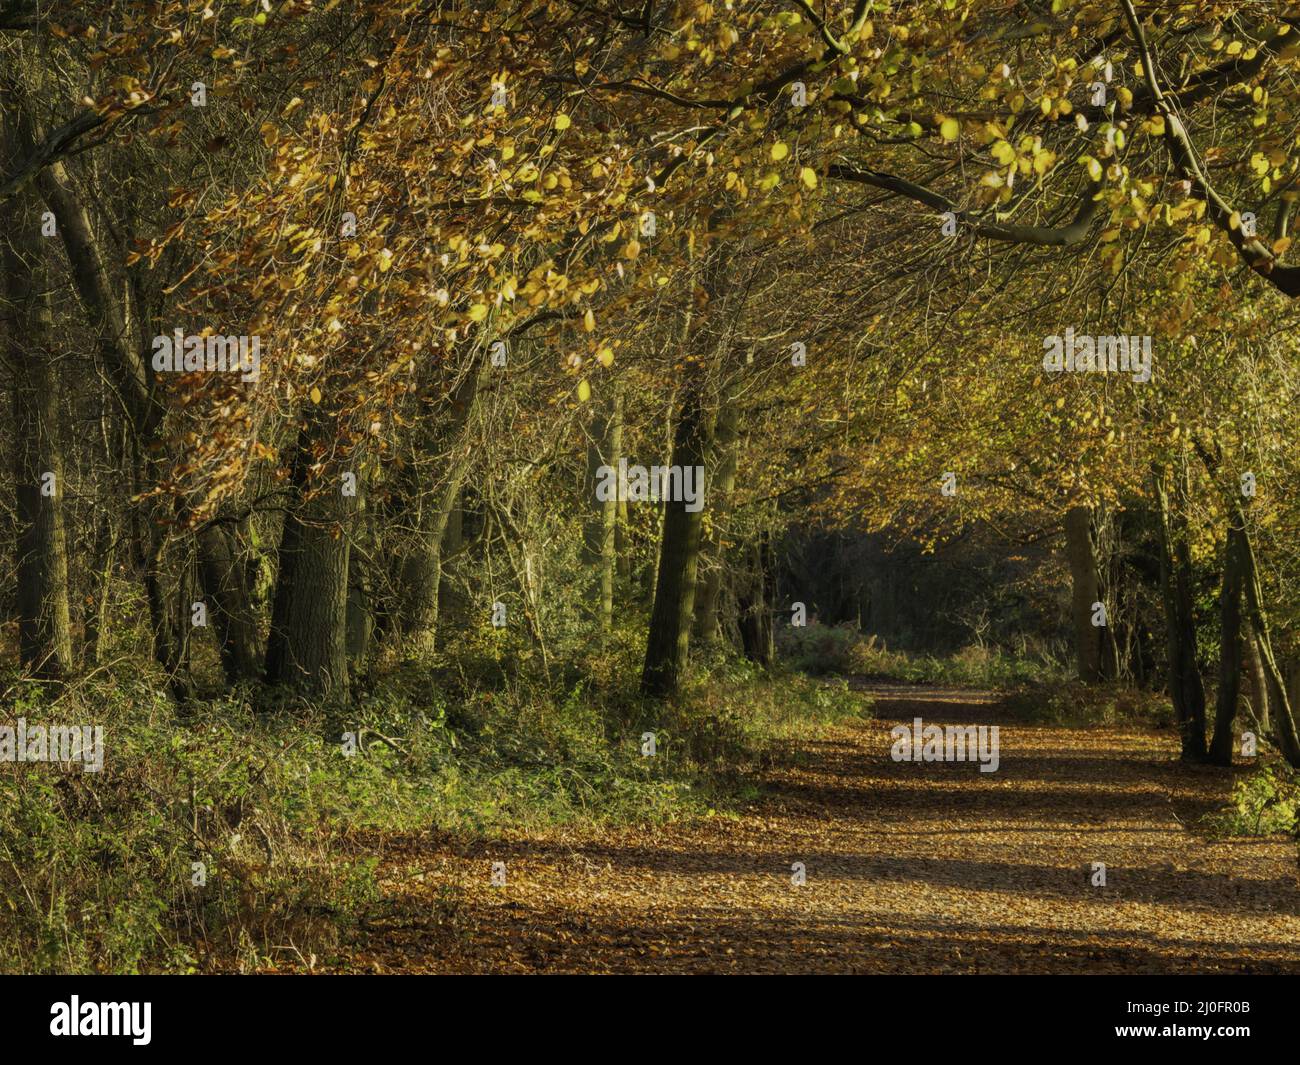 UK - Hertfordshire - Ashridge Woods Stock Photo